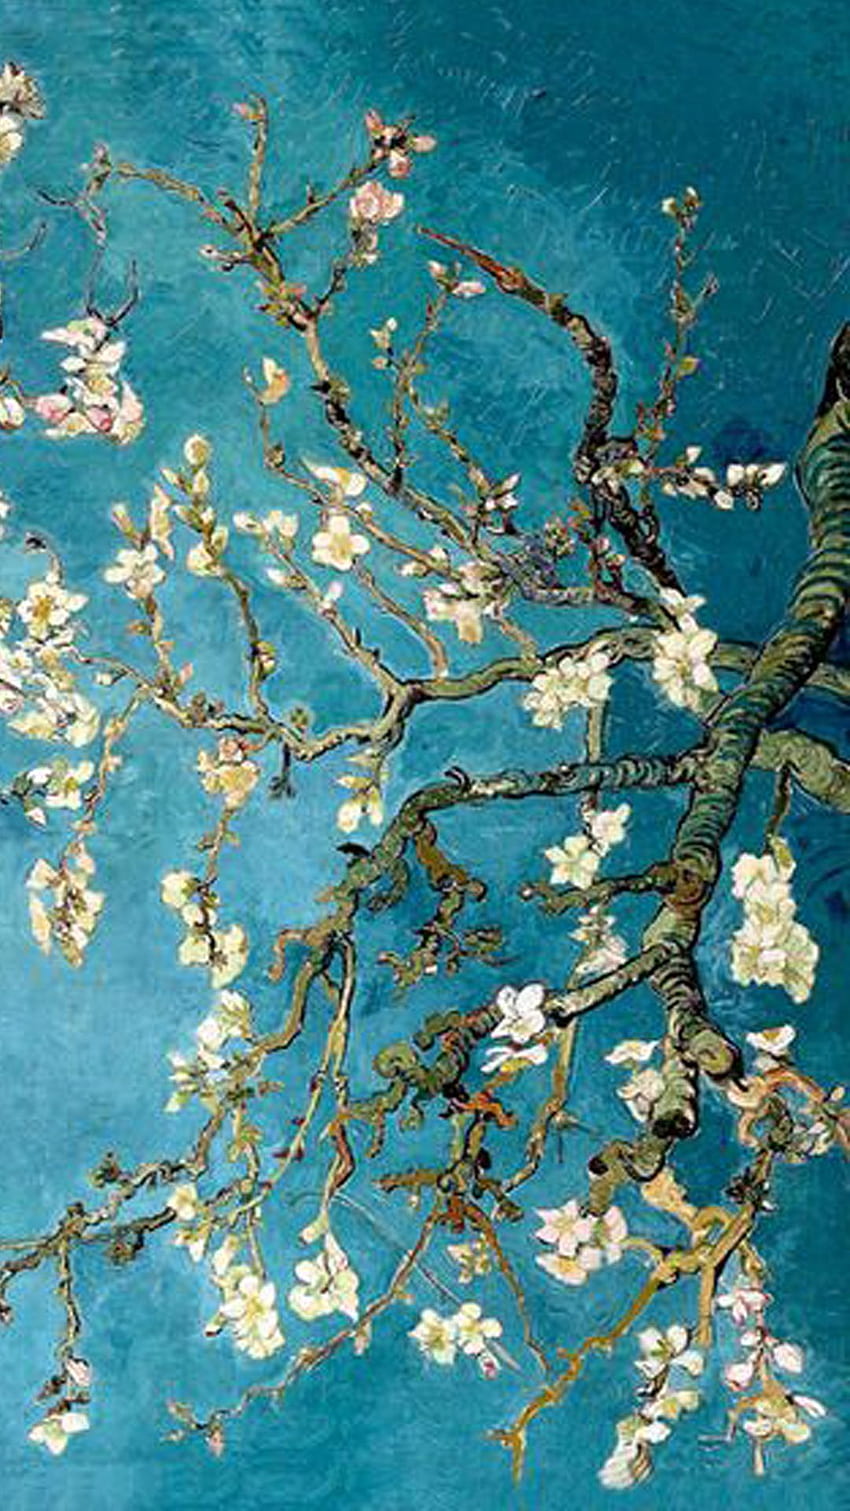 Download free image of Van Gogh iPhone wallpaper HD background Wheatfield  with Crows by Gade   Arte van gogh Imagem de fundo para iphone Belas  fotos de flores